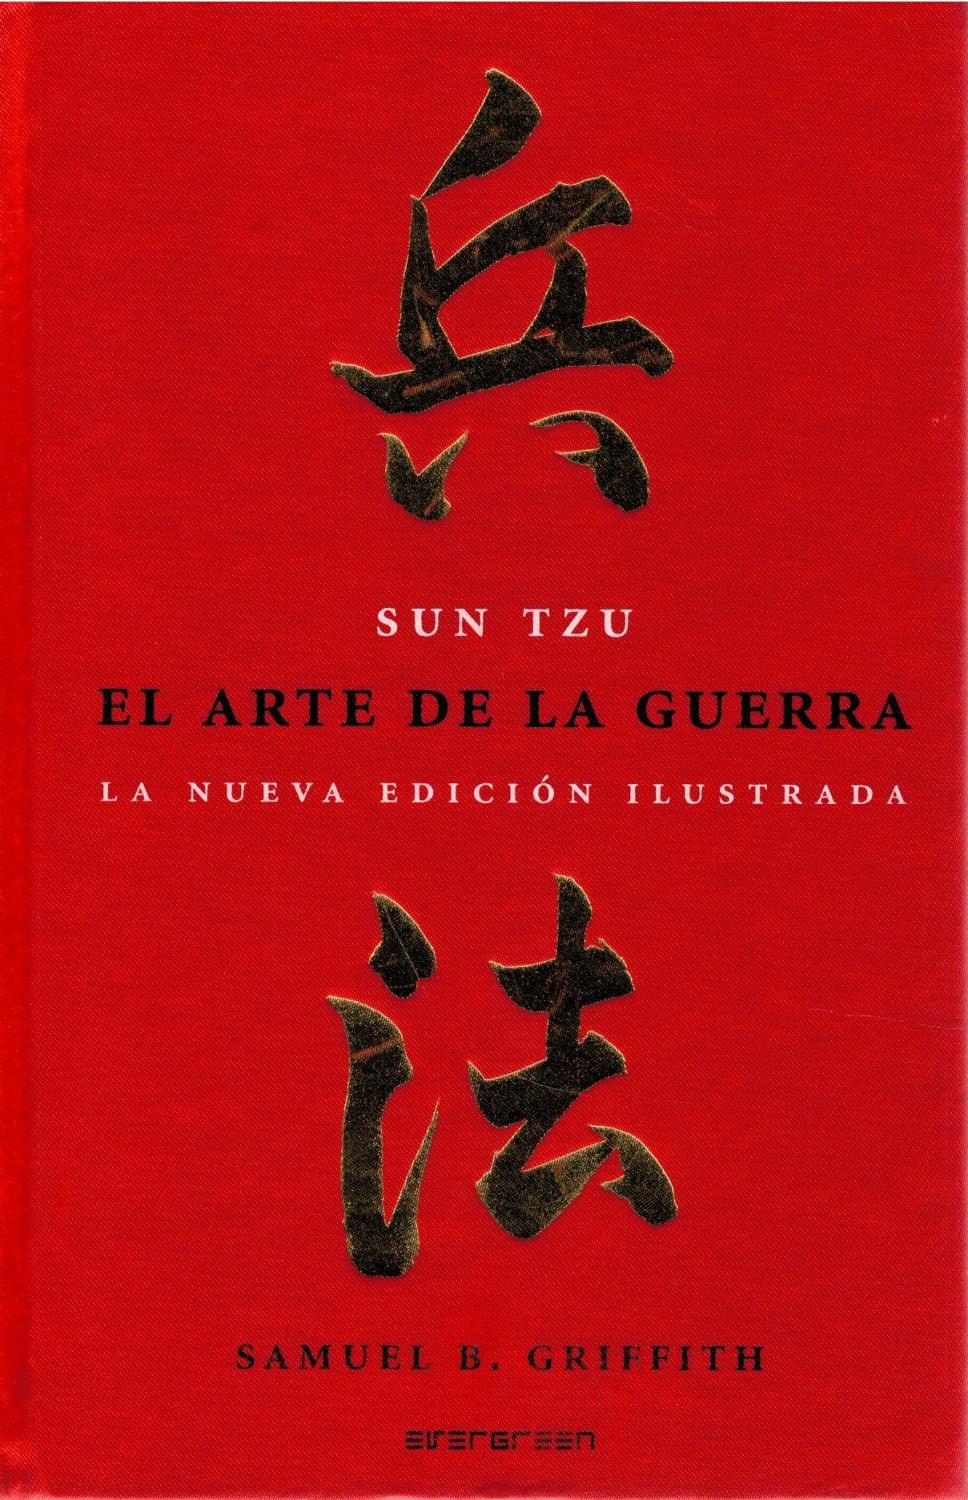 EL ARTE DE LA GUERRA - Sun Tzu